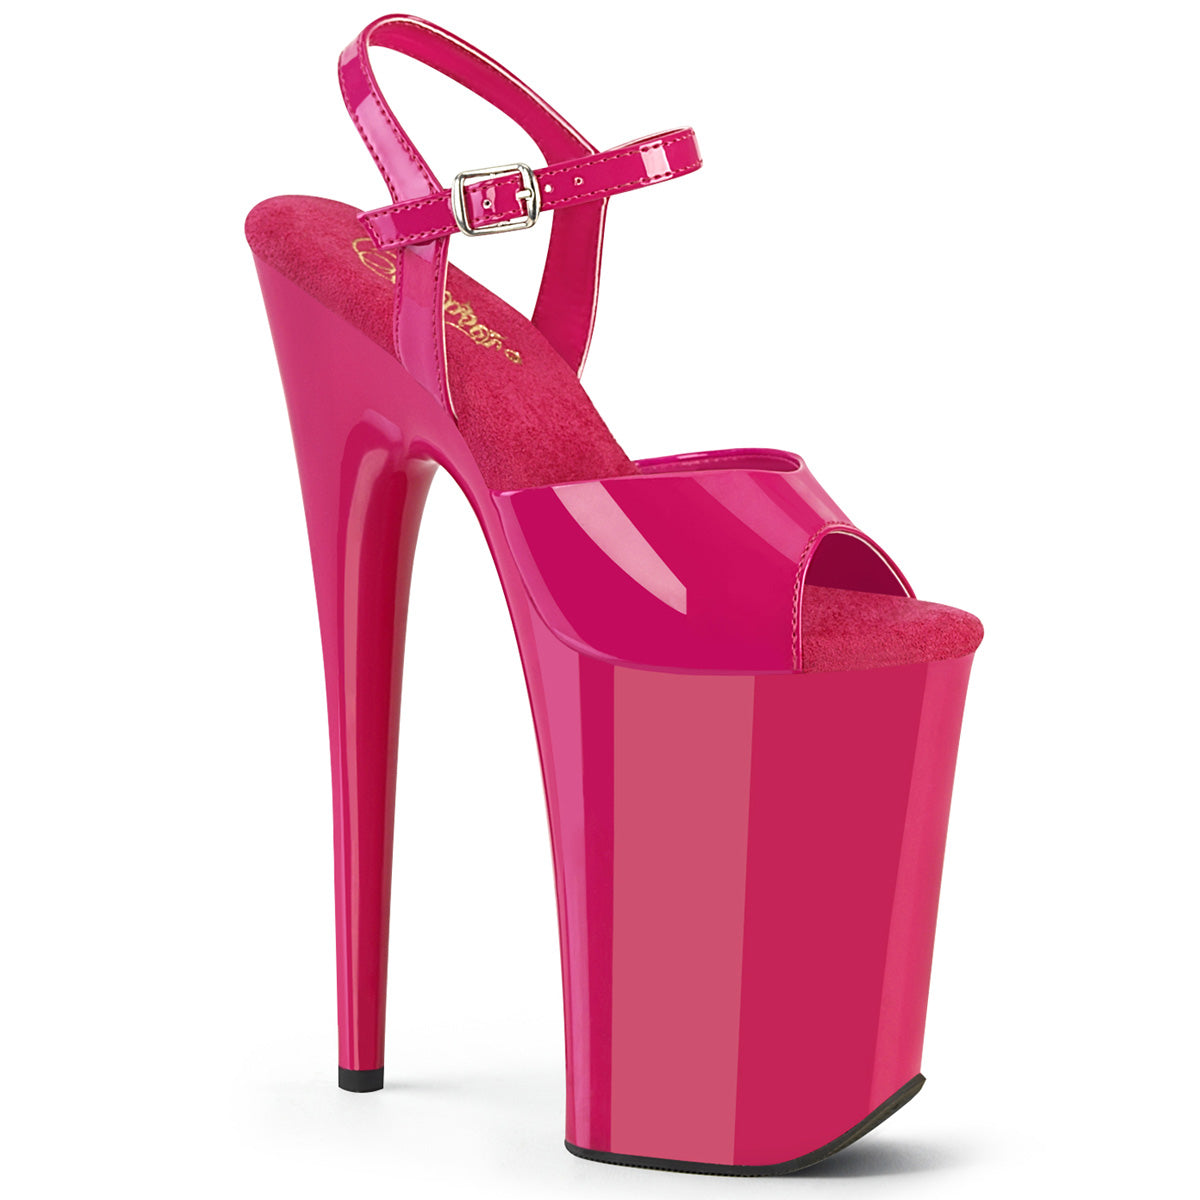 INFINITY-909 Pleaser 9" Heel Hot Pink Pole Dance Platform Shoes